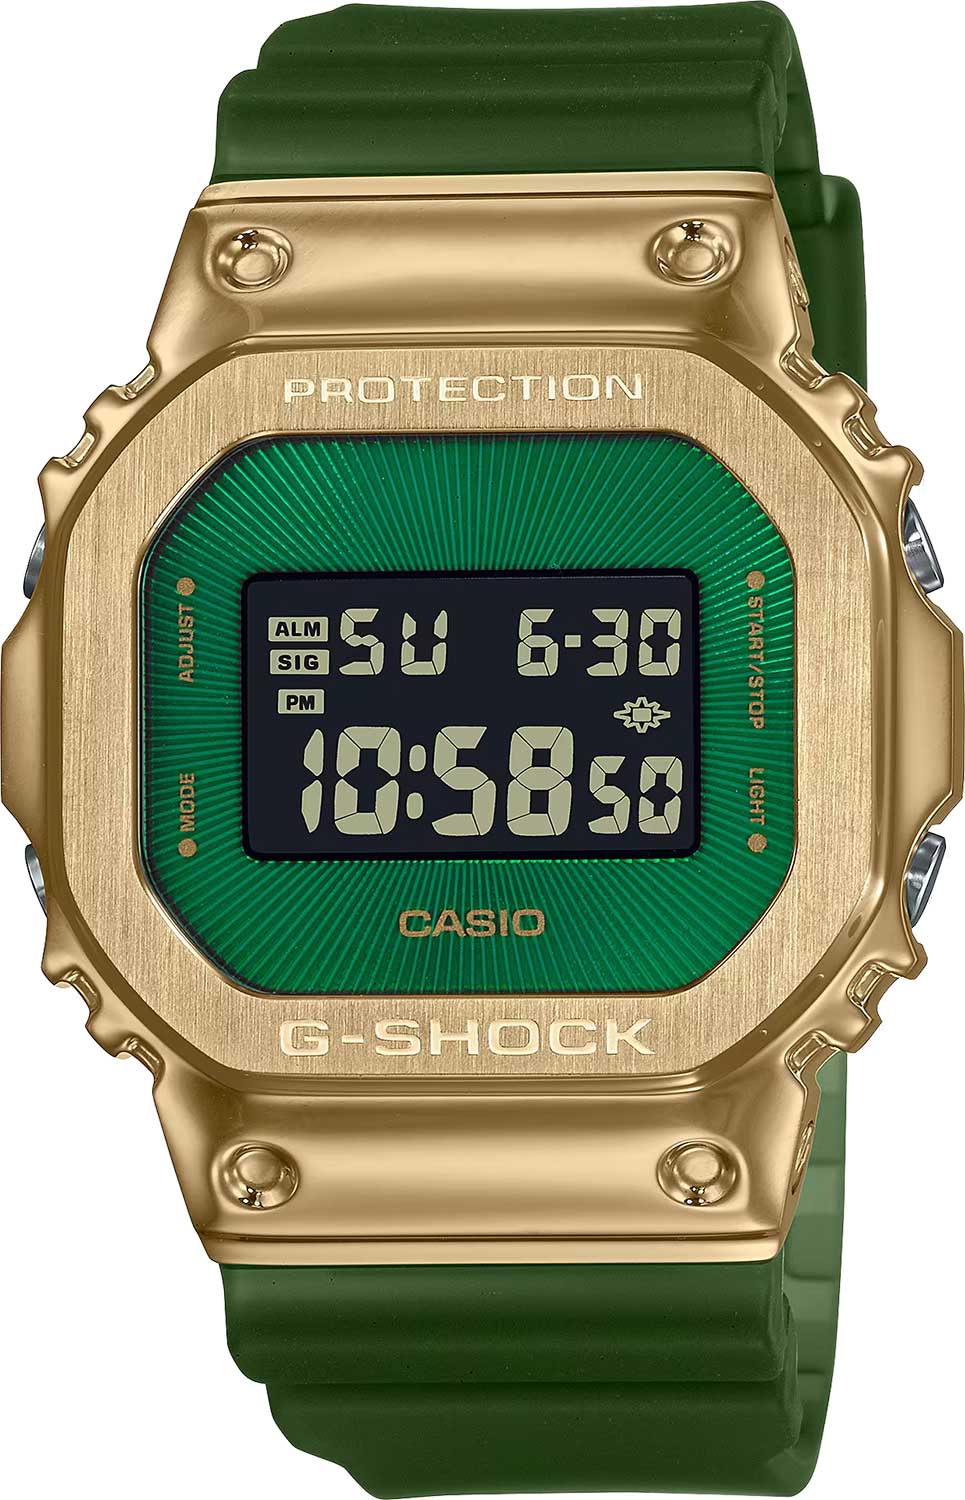    Casio G-SHOCK GM-5600CL-3E  